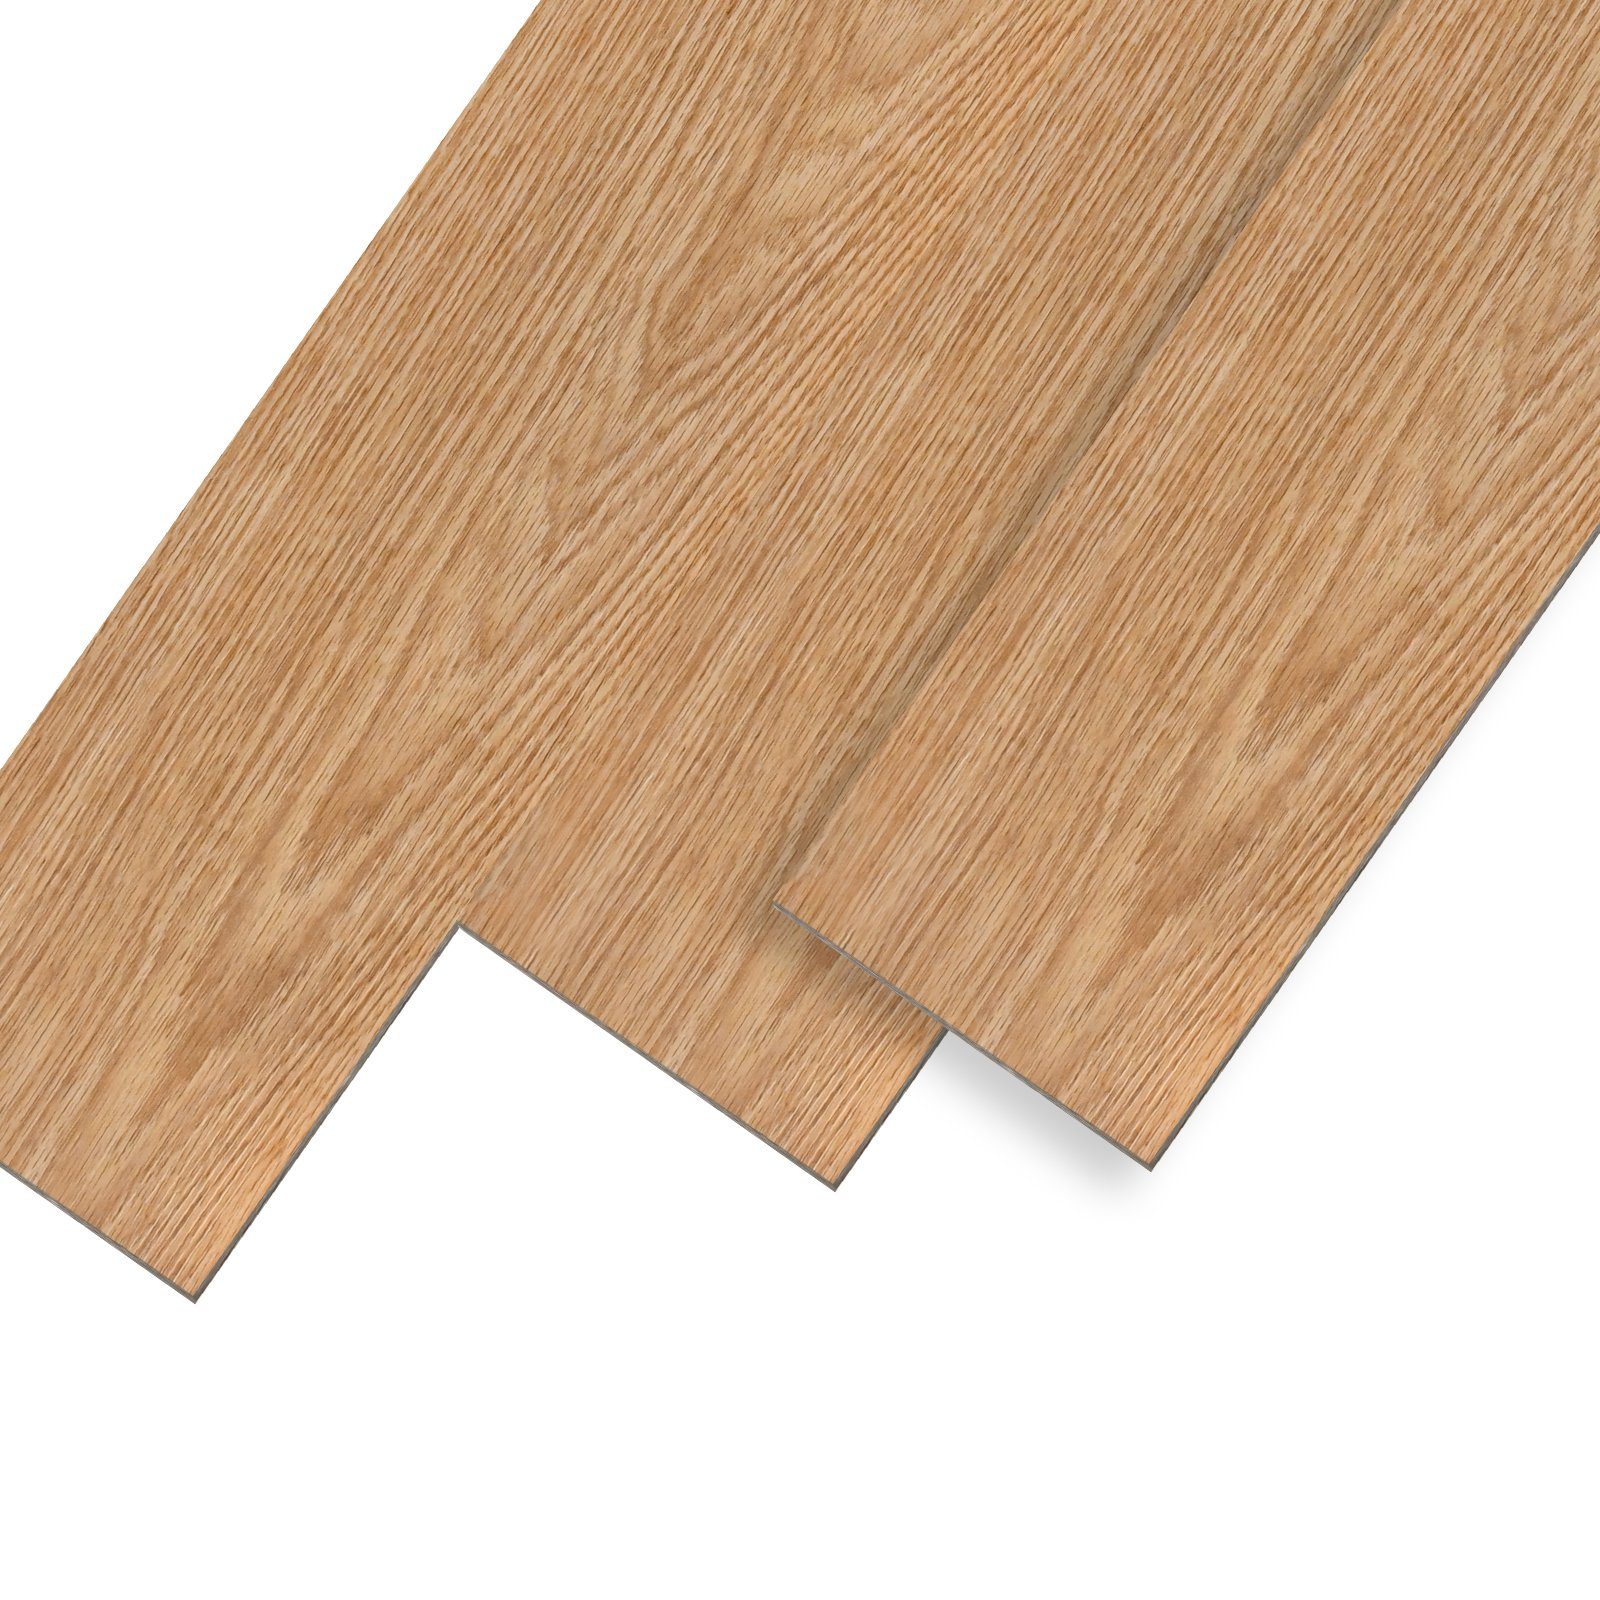 UISEBRT Vinylboden PVC Bodenbelag Selbstklebend Holz-Optik Dekor-Dielen Warm Oak